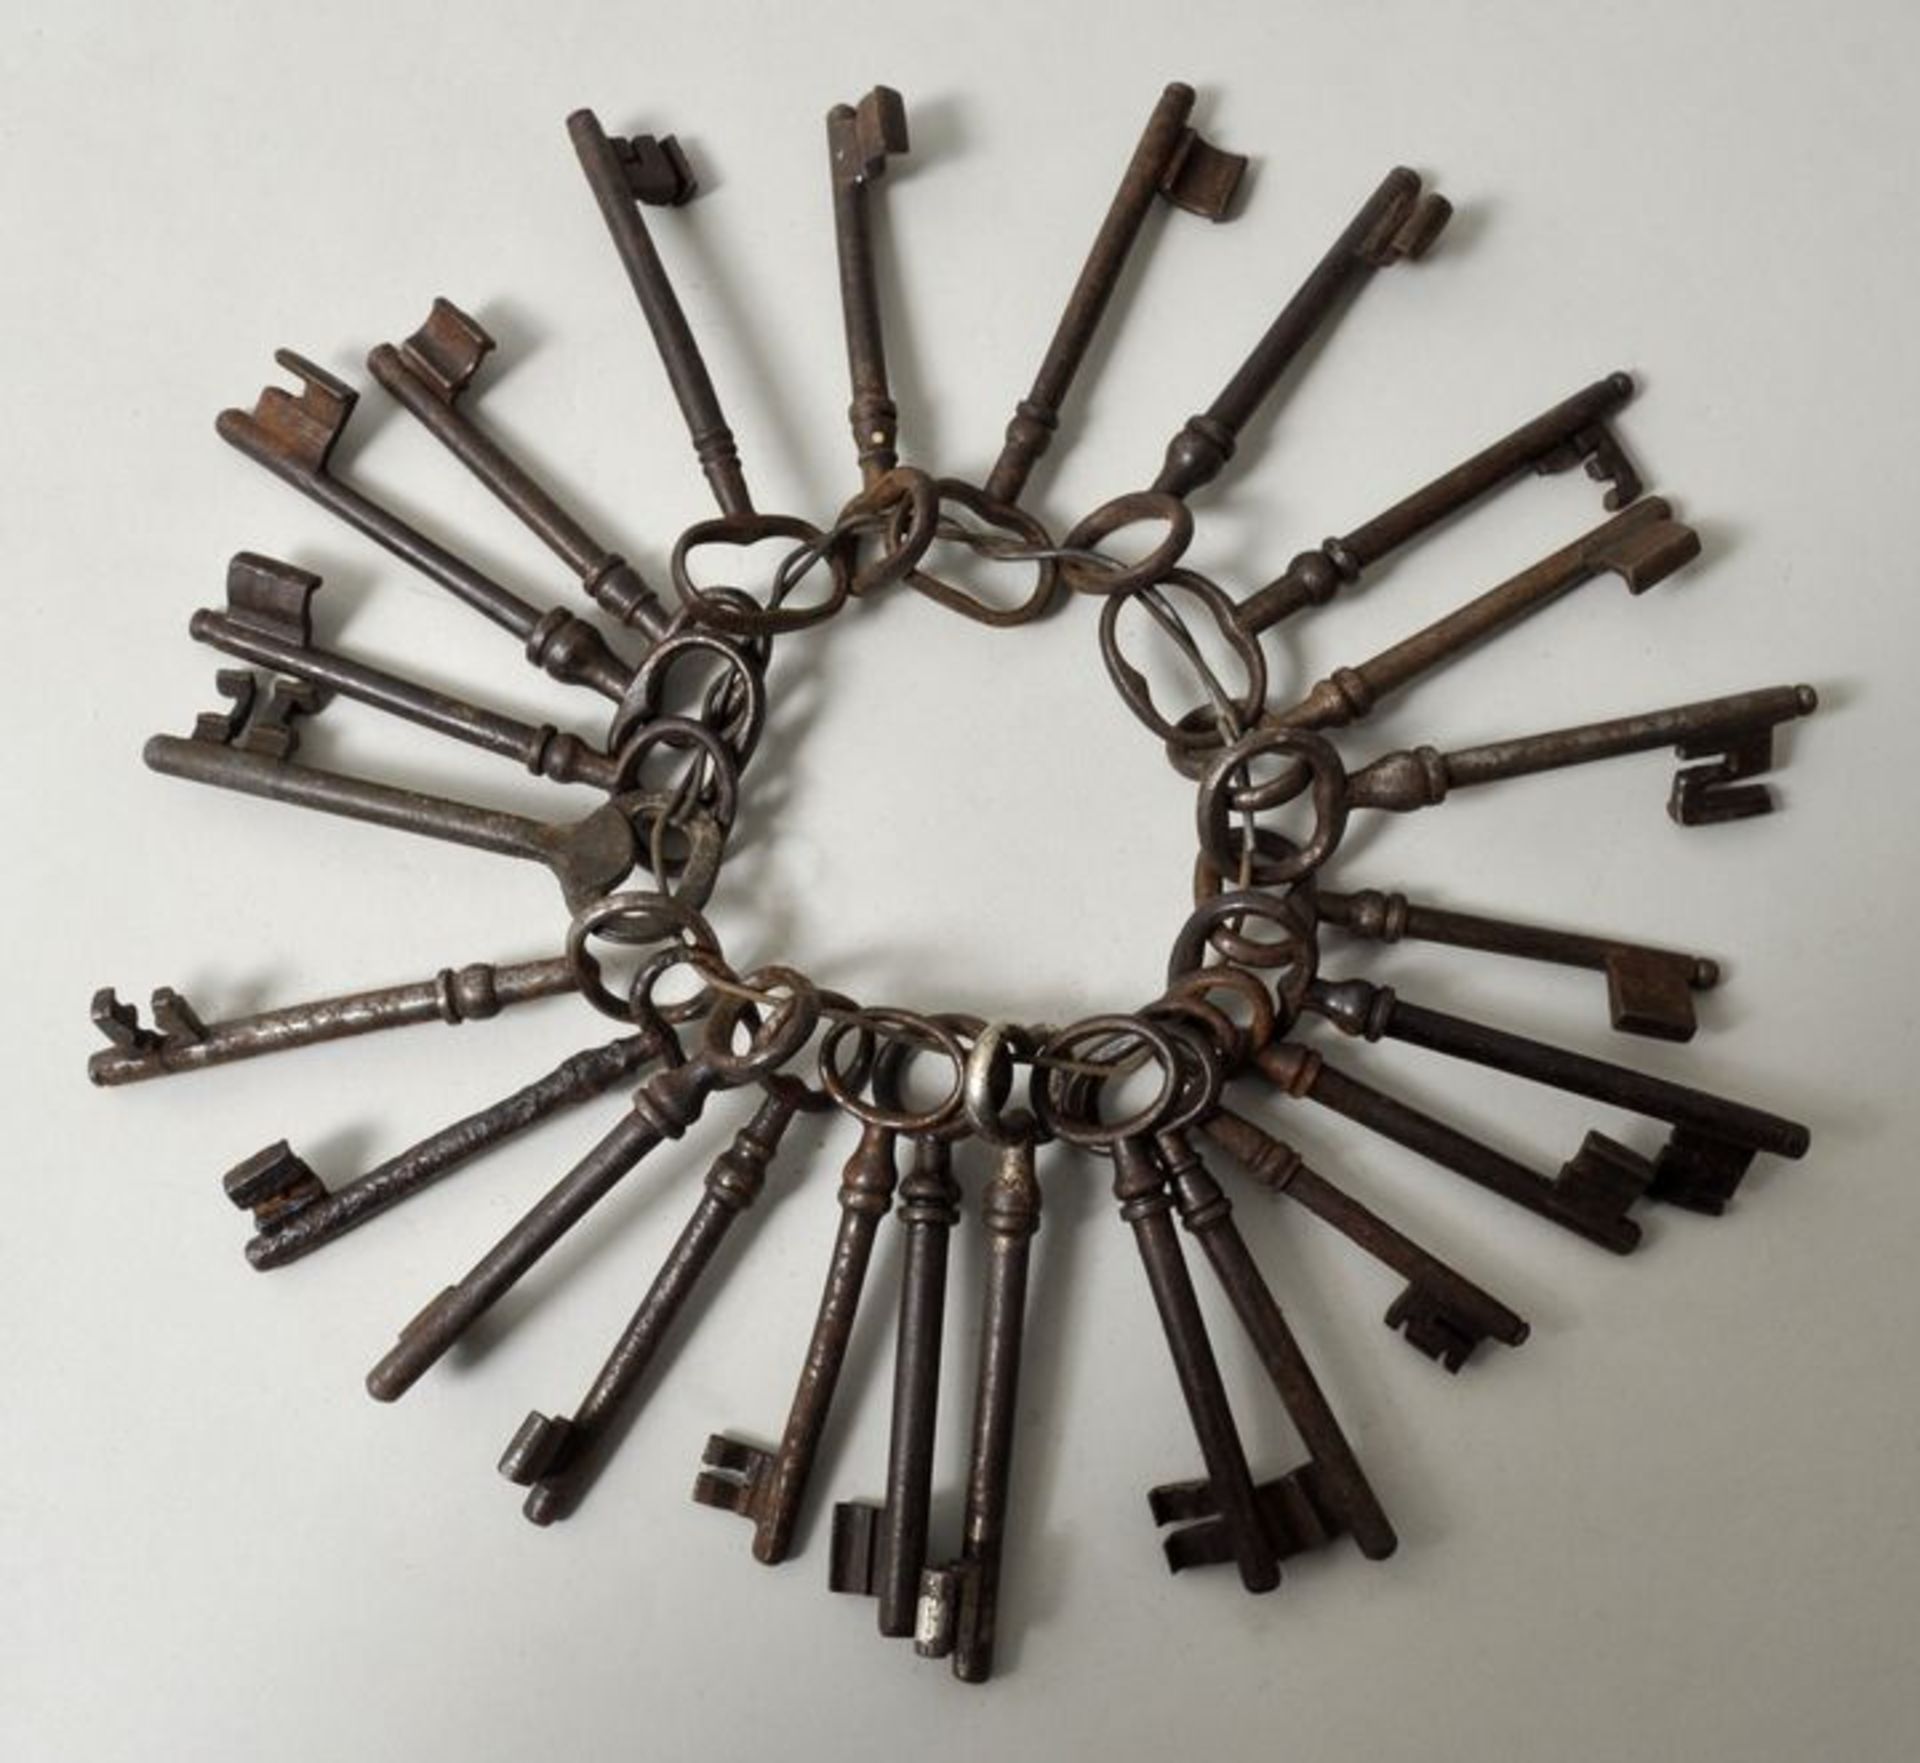 Konvolut Schlüssel, 19. Jh.24 Schlüssel; Eisen, nierenförmige Griffform, Volldorn.- - -25.00 %